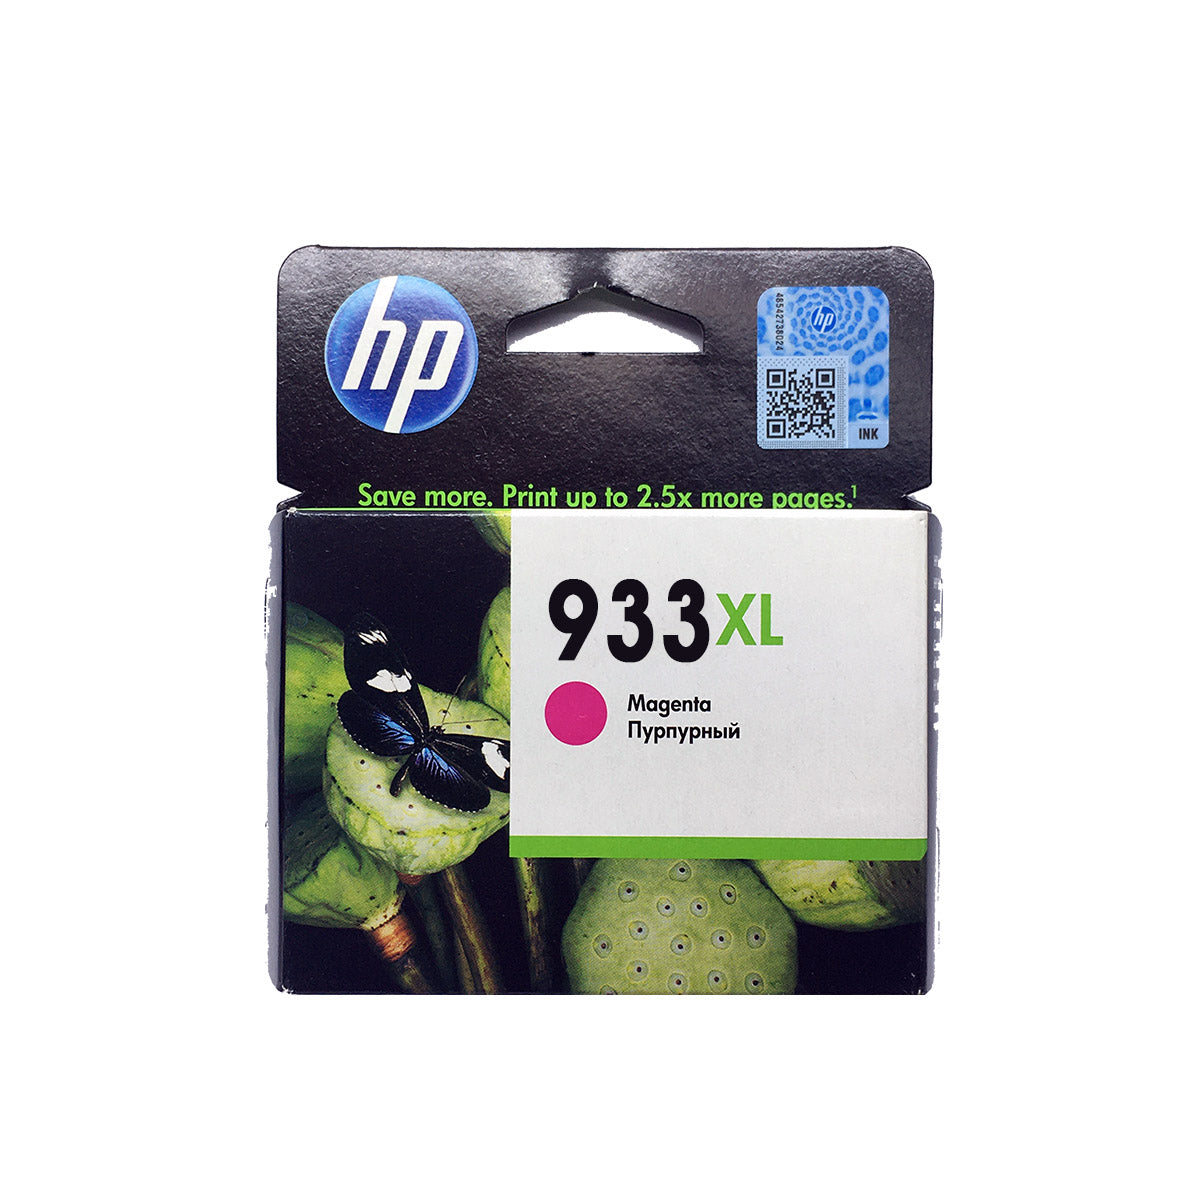 Shop HP 933XL Original Ink Cartridge Magenta Color online in Abu Dhabi, UAE